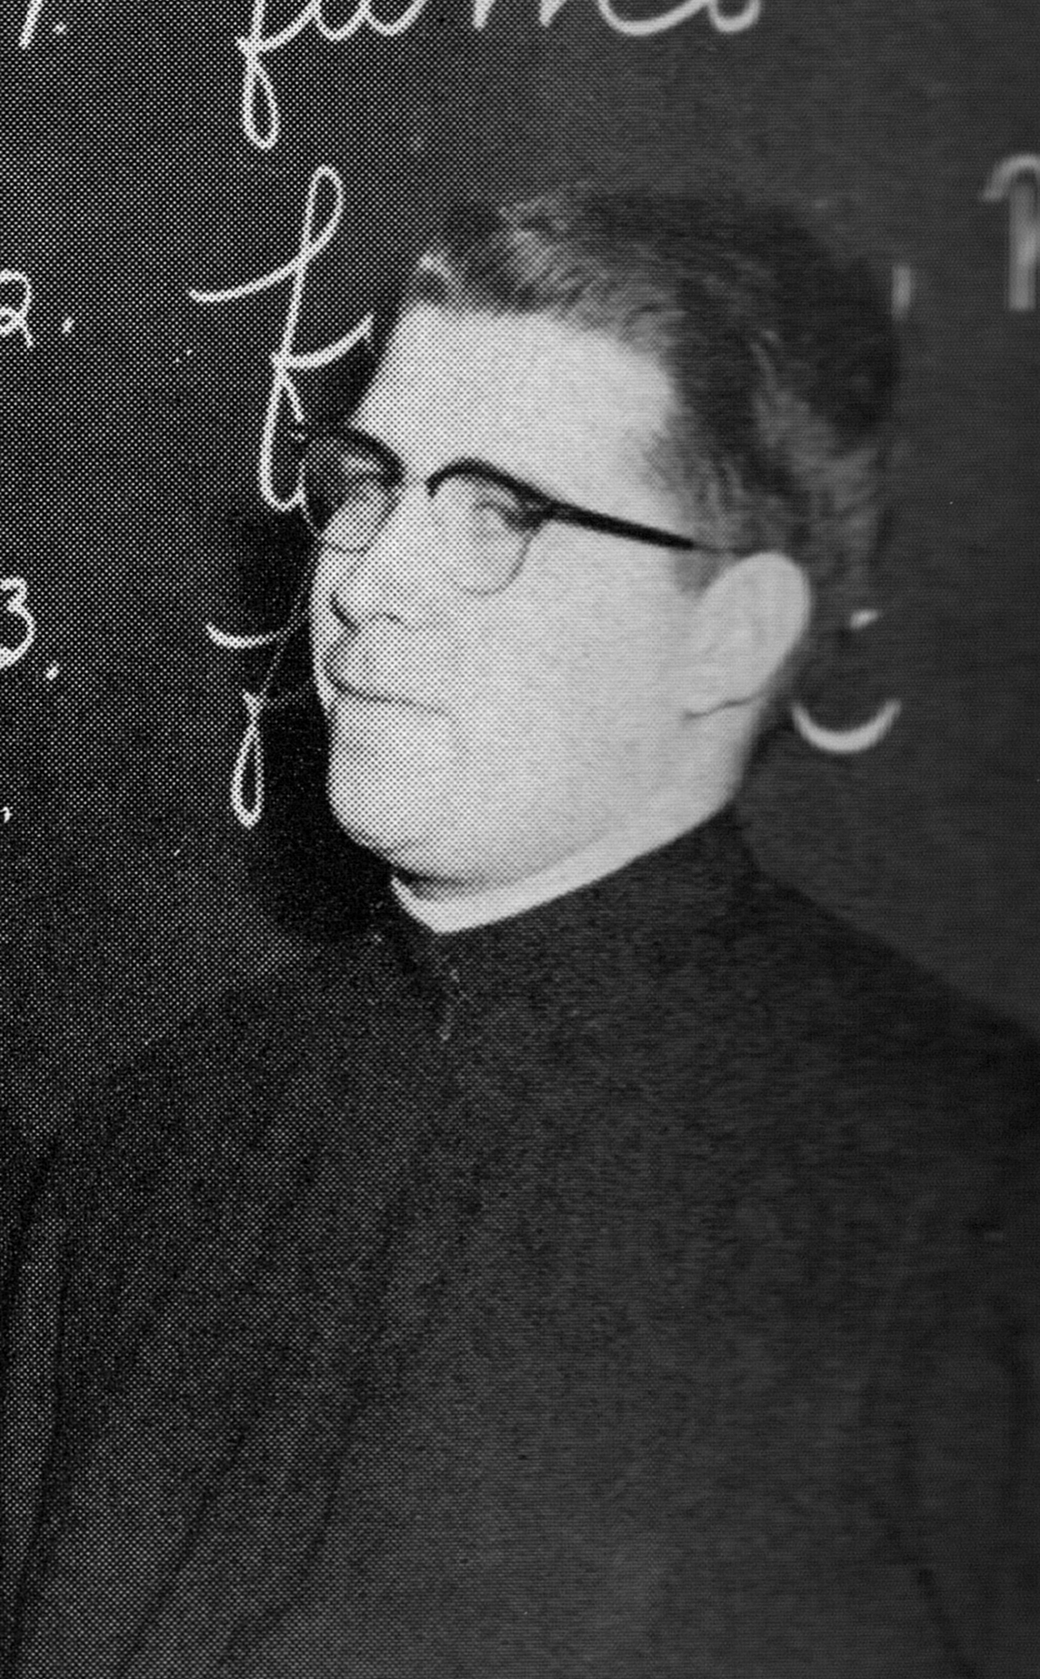 Fr. Jim Fitzgerald, SJ - Latin